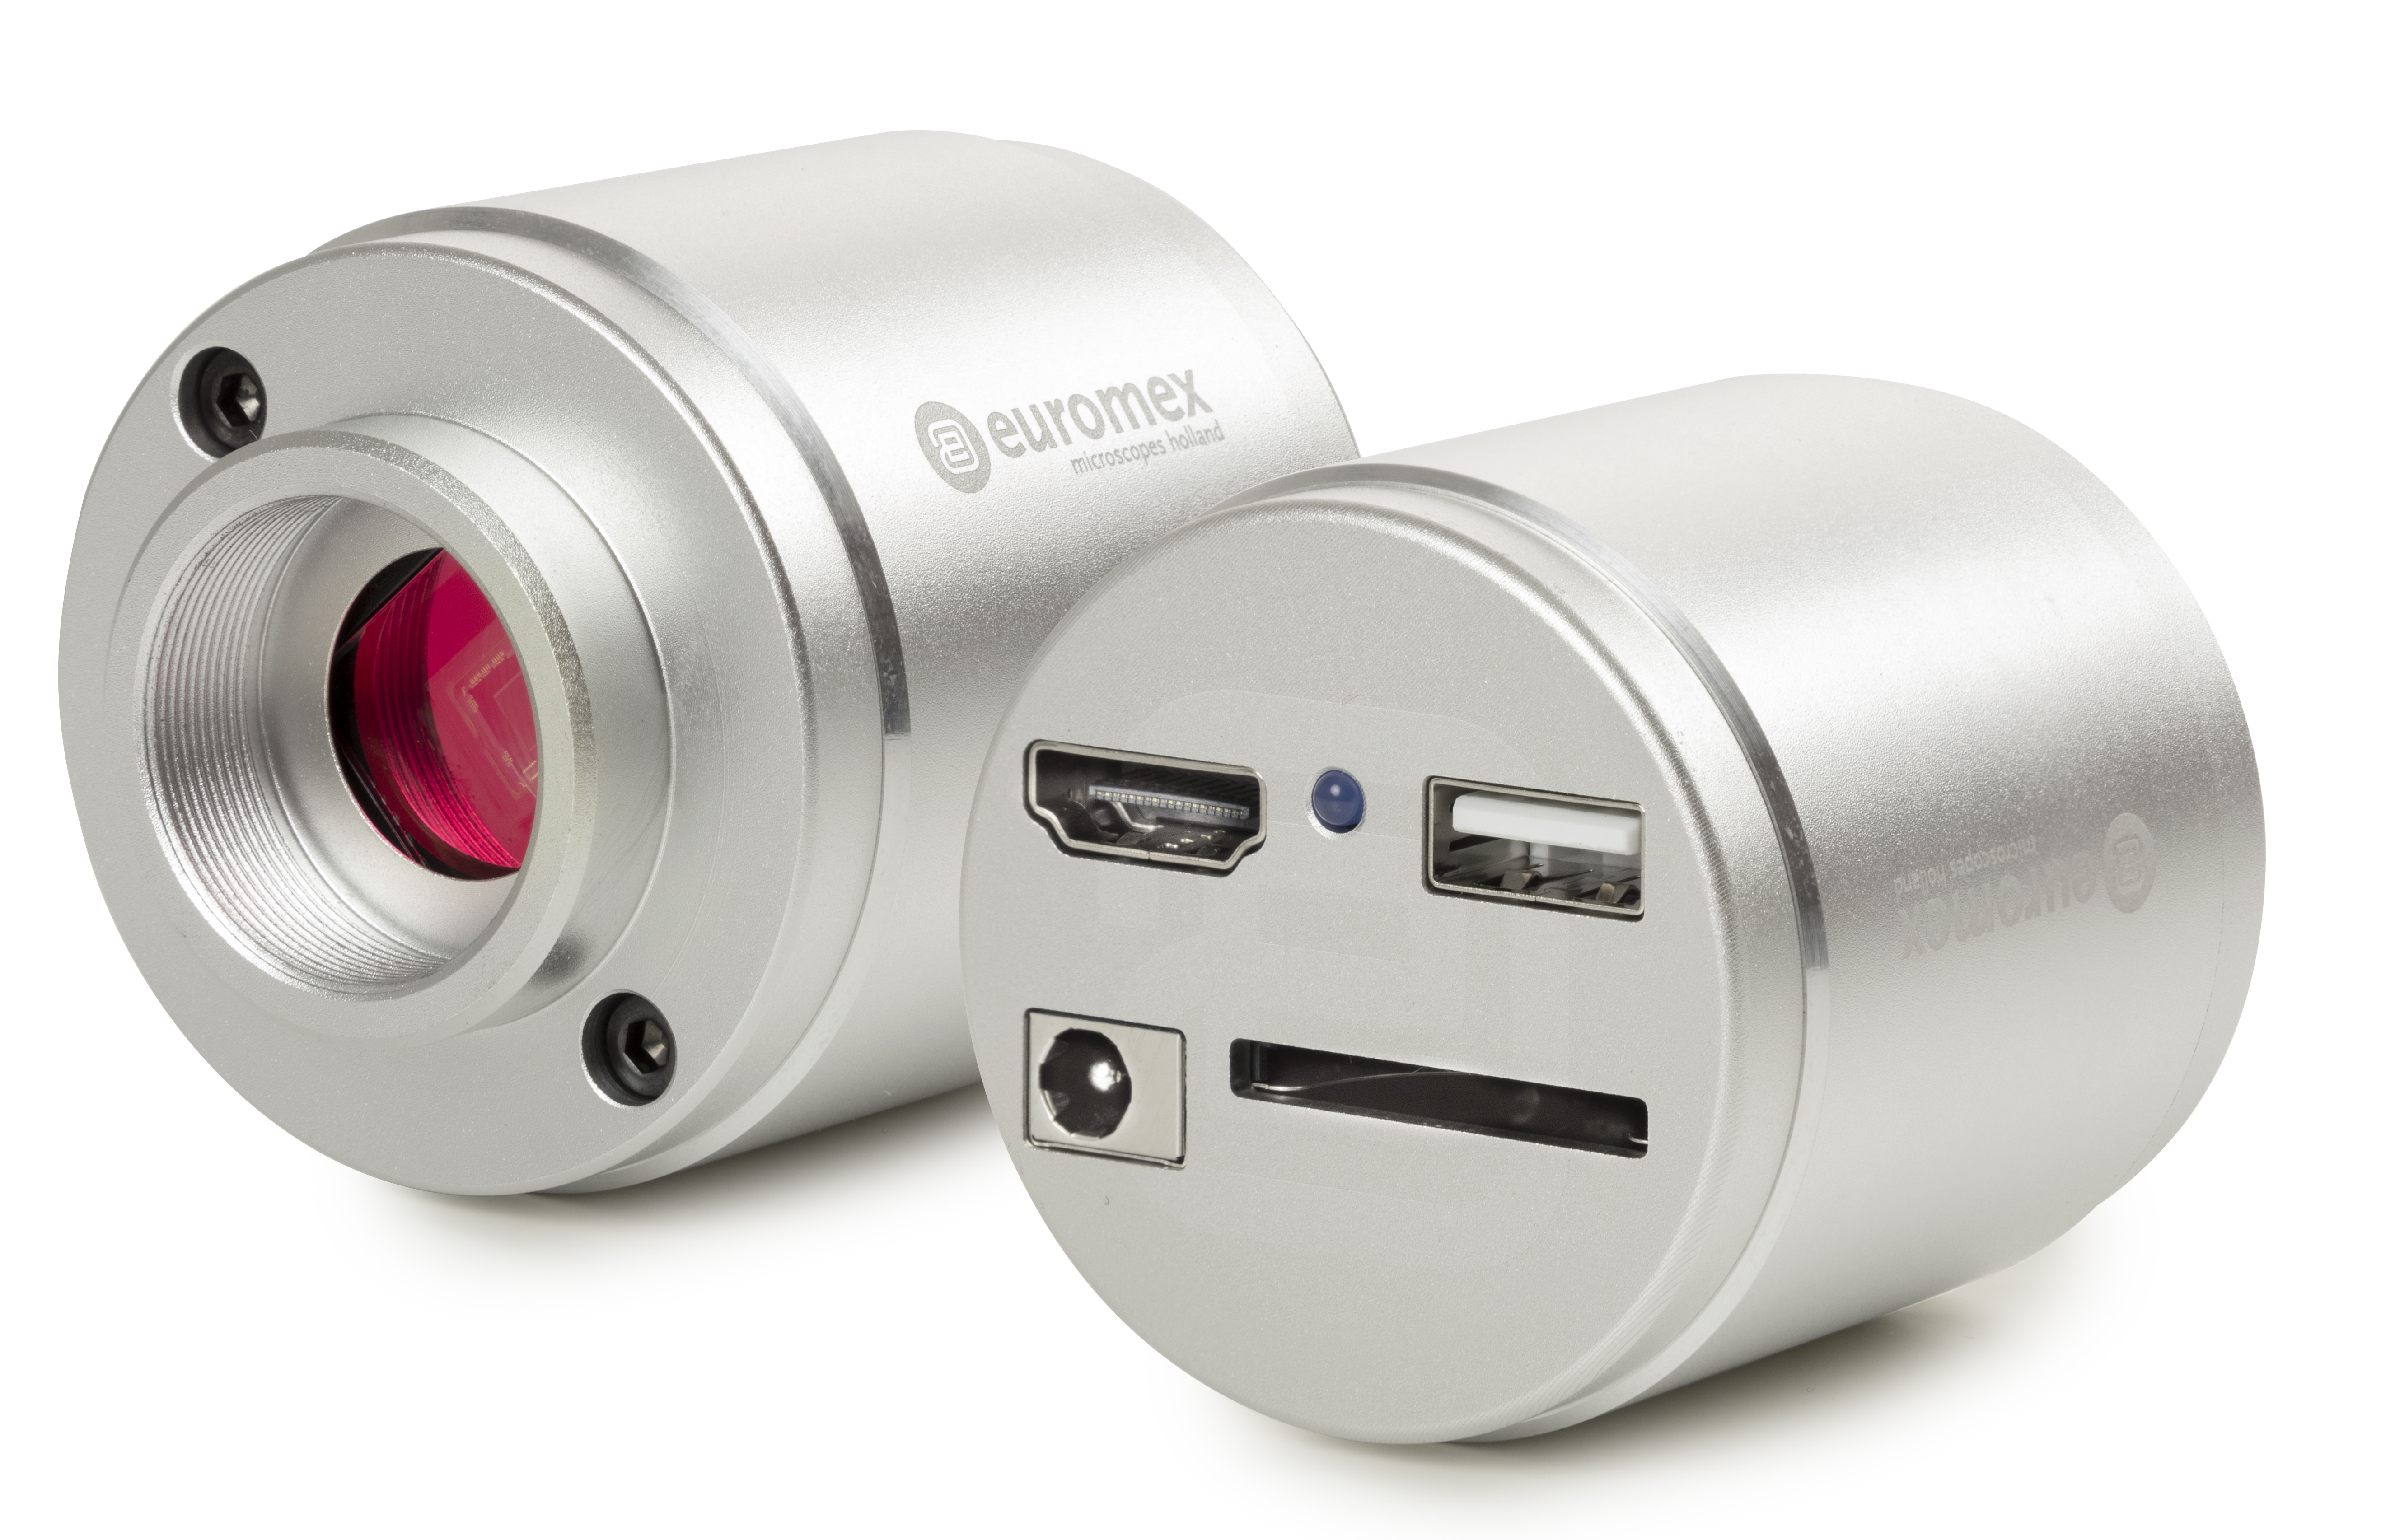 Seitenansicht einer runden Euromex HD-Farbkamera. Zwei Kameras sind abgebildet um zwei Seiten zu zeigen: die linke zeigt das Objektiv (eine rote Linse), währen die rechte die USB-Stecker zeigt.